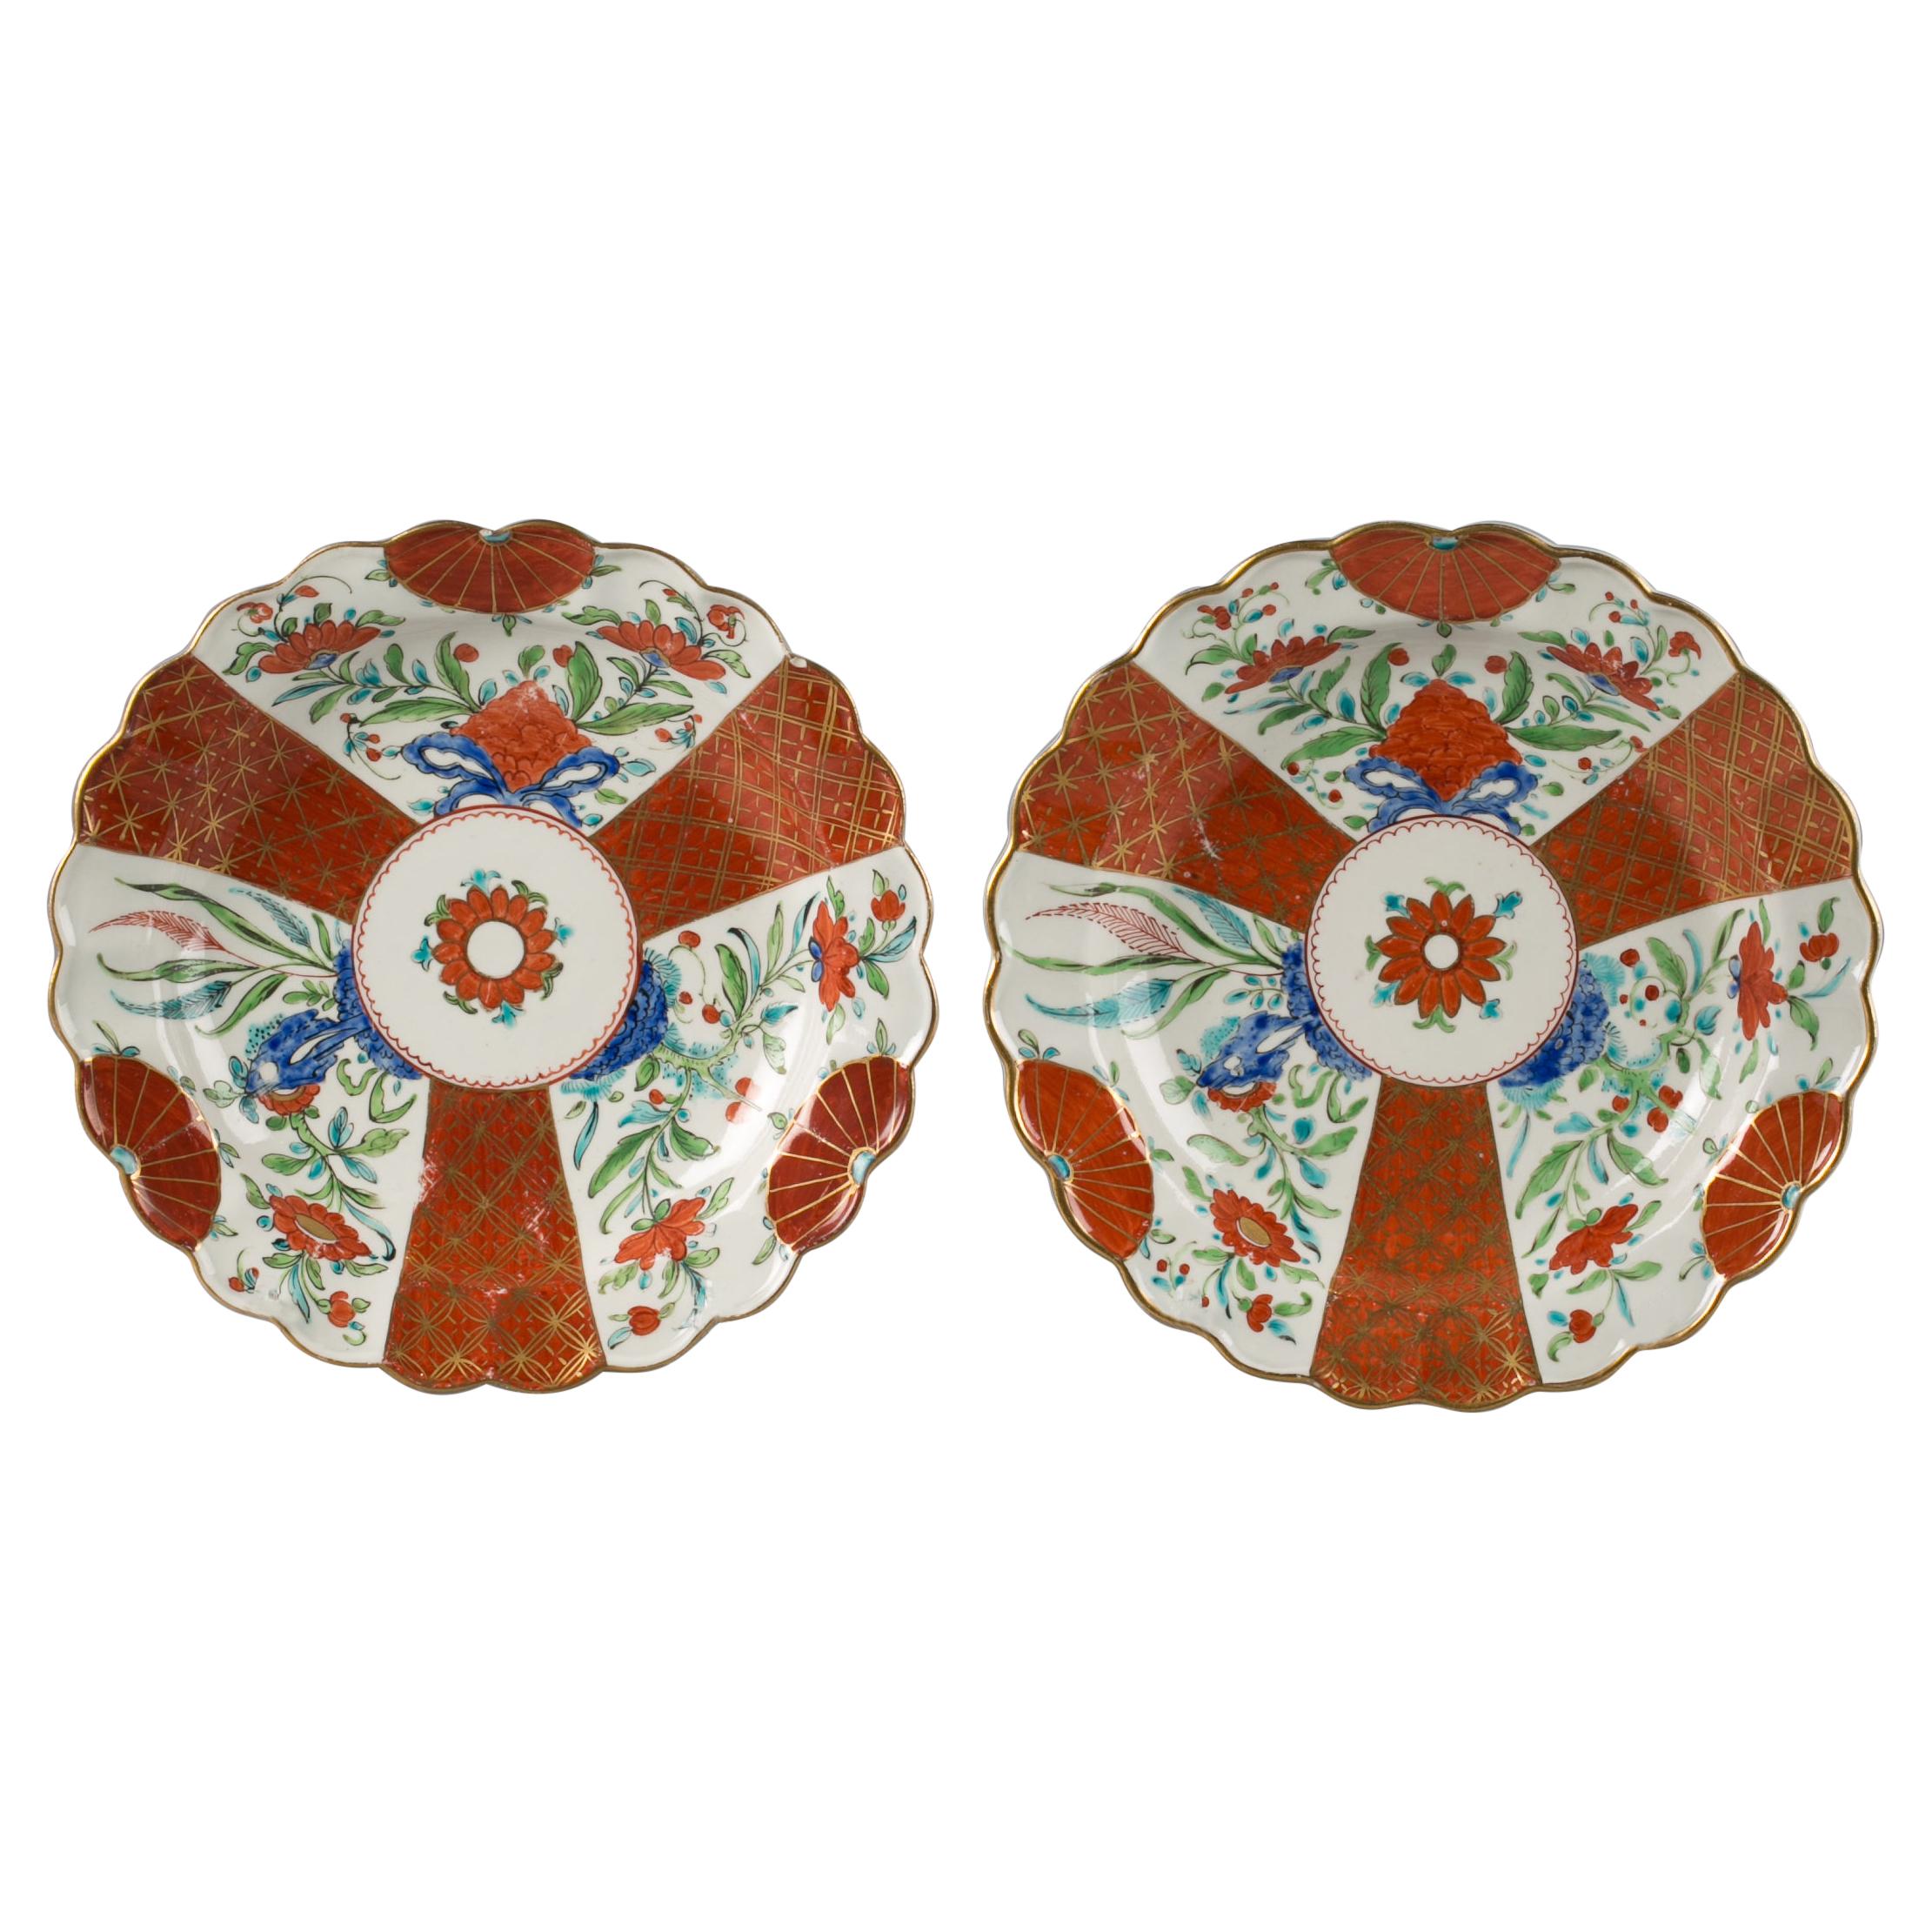 Pair of English Porcelain Japan Pattern Plates, Worcester, Circa 1770